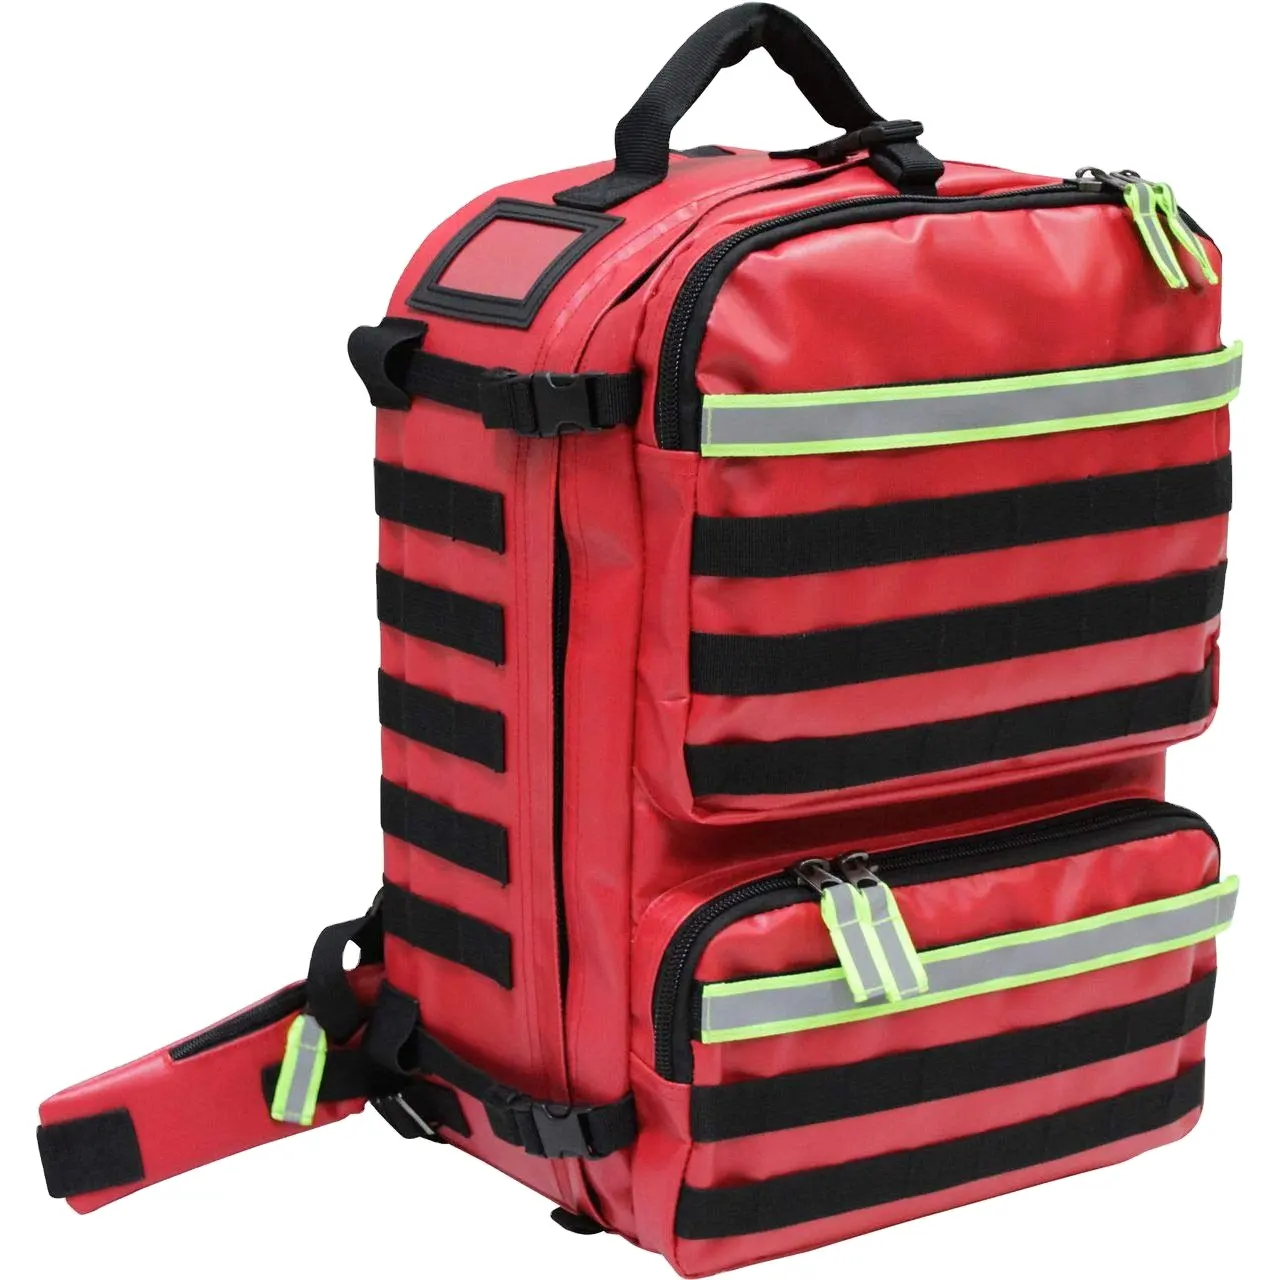 बचाव सामरिक बैकपैक पहली सहायता किट चिकित्सा आपातकालीन बैग लाल